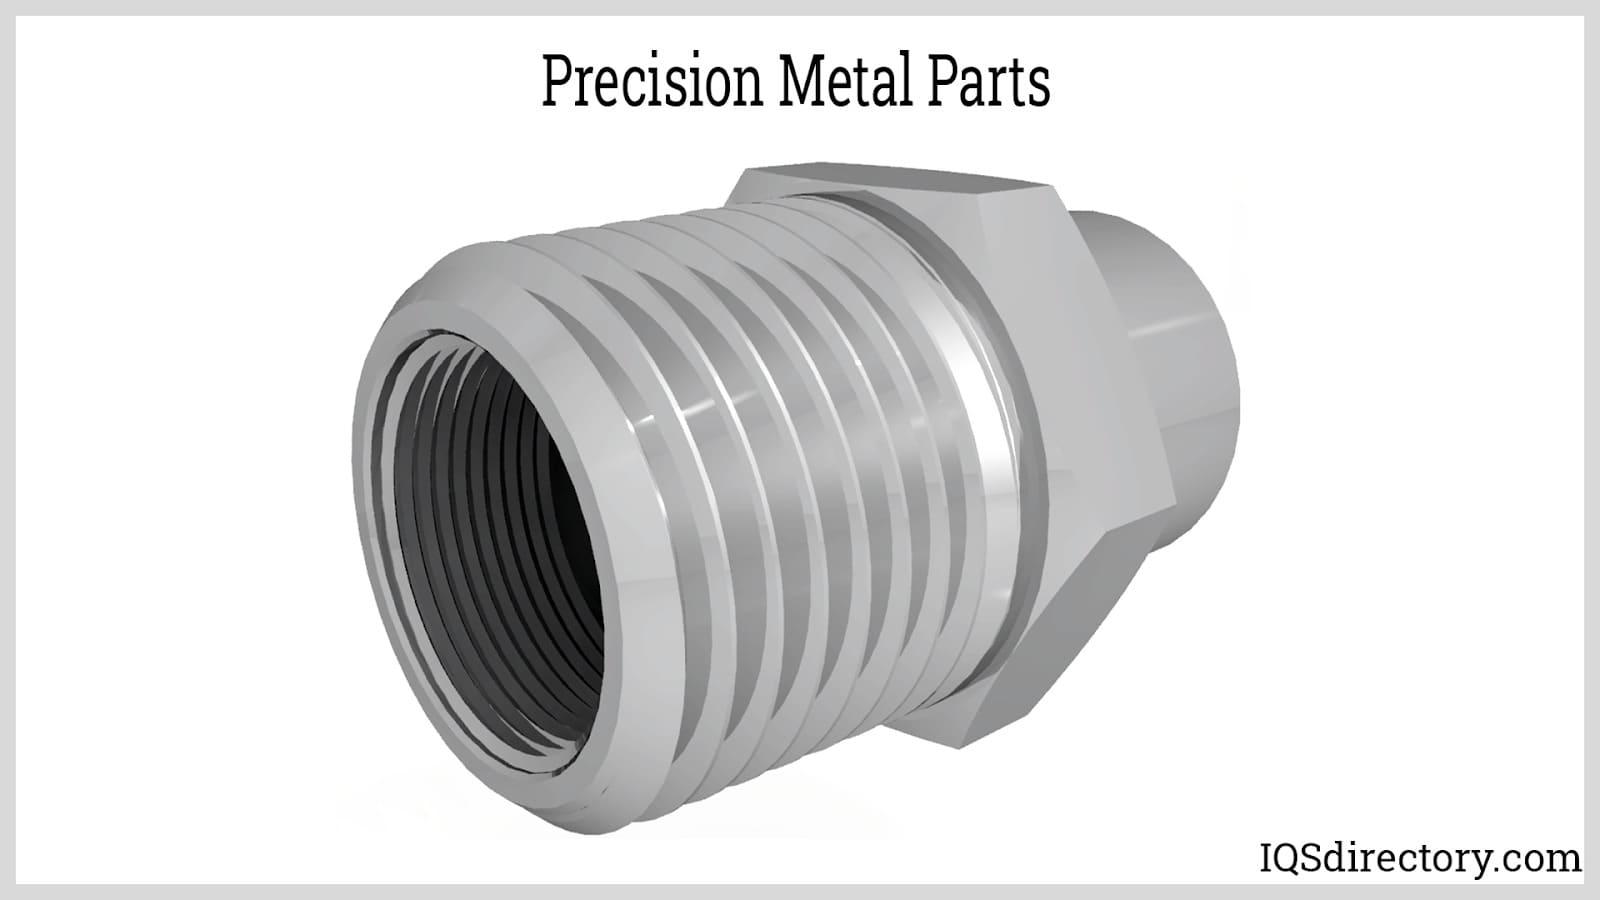 Precision Metals